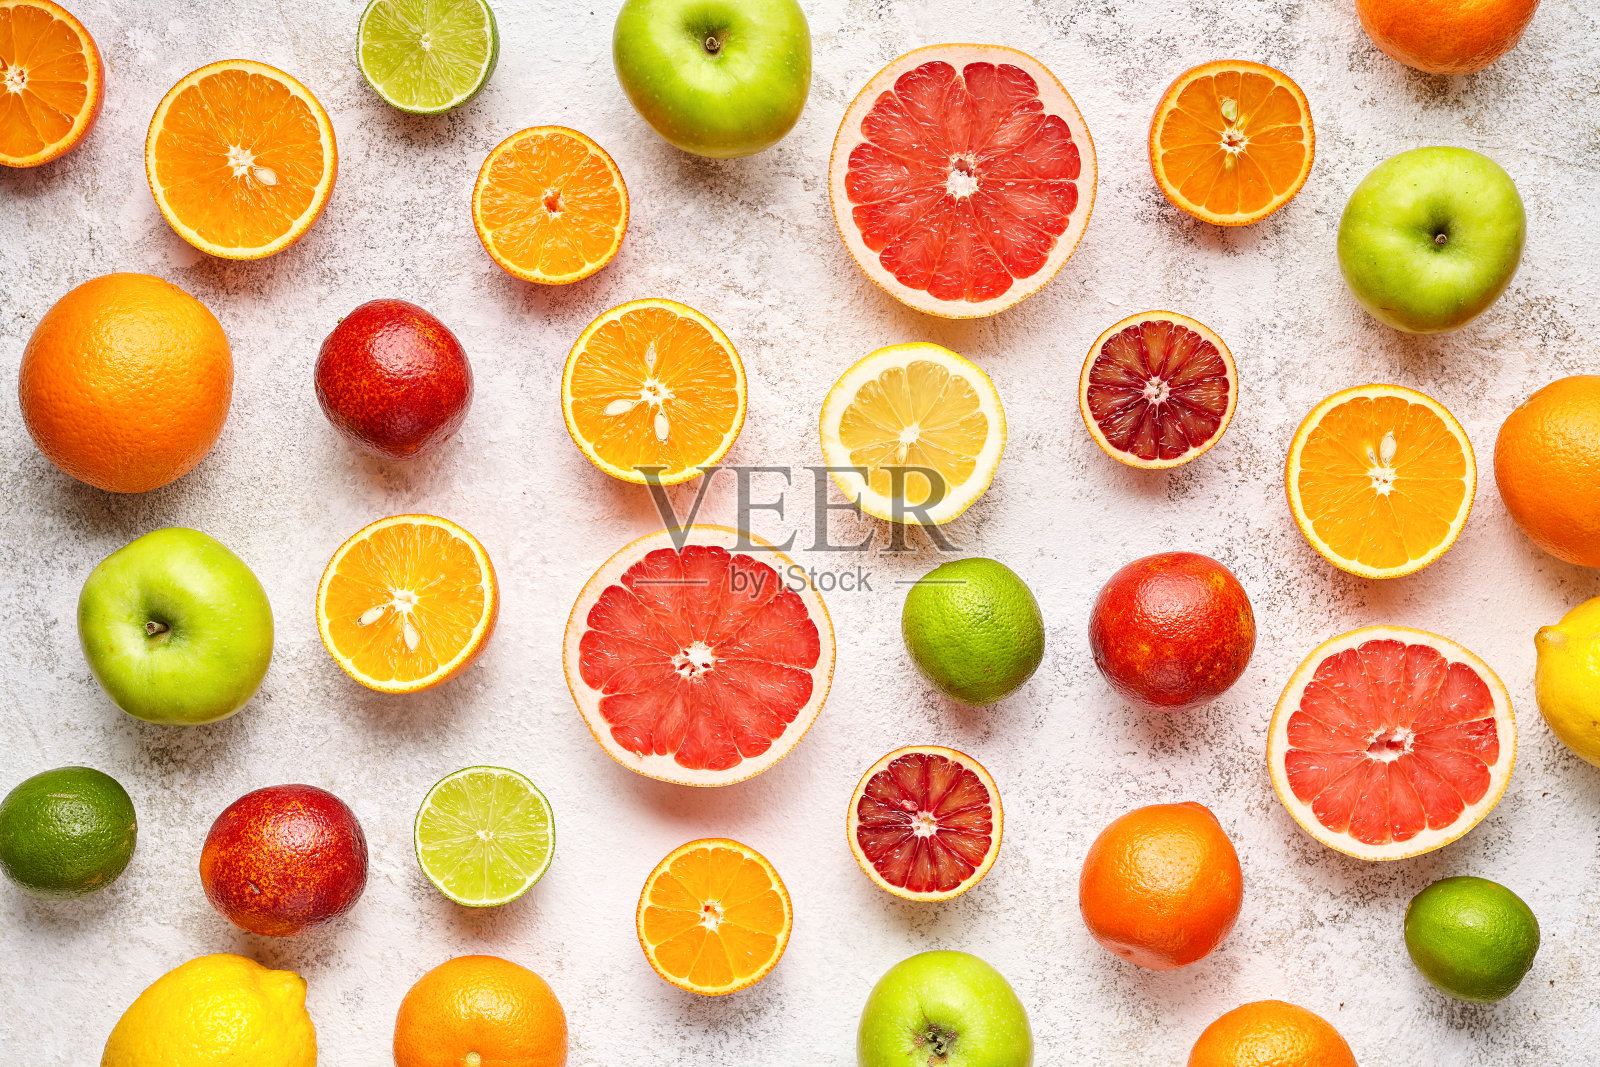 白色混凝土桌上的柑橘水果图案。食品的背景。健康饮食。抗氧化剂，排毒，节食，清洁饮食，素食，纯素，健身或健康的生活方式概念照片摄影图片